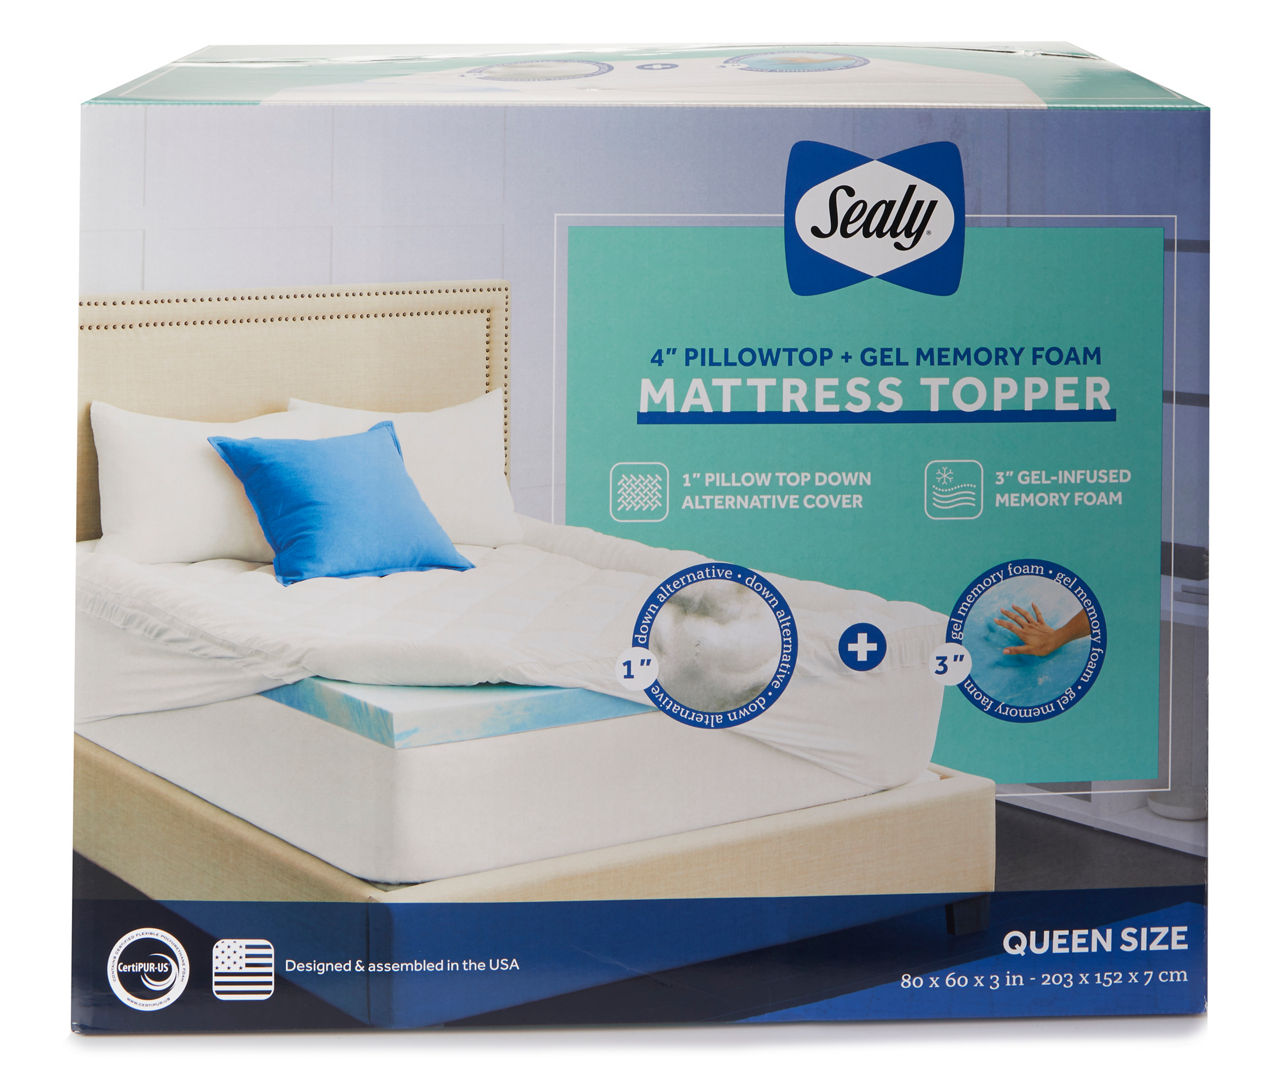 4" Pillow Top & Gel Memory Foam Queen Mattress Topper